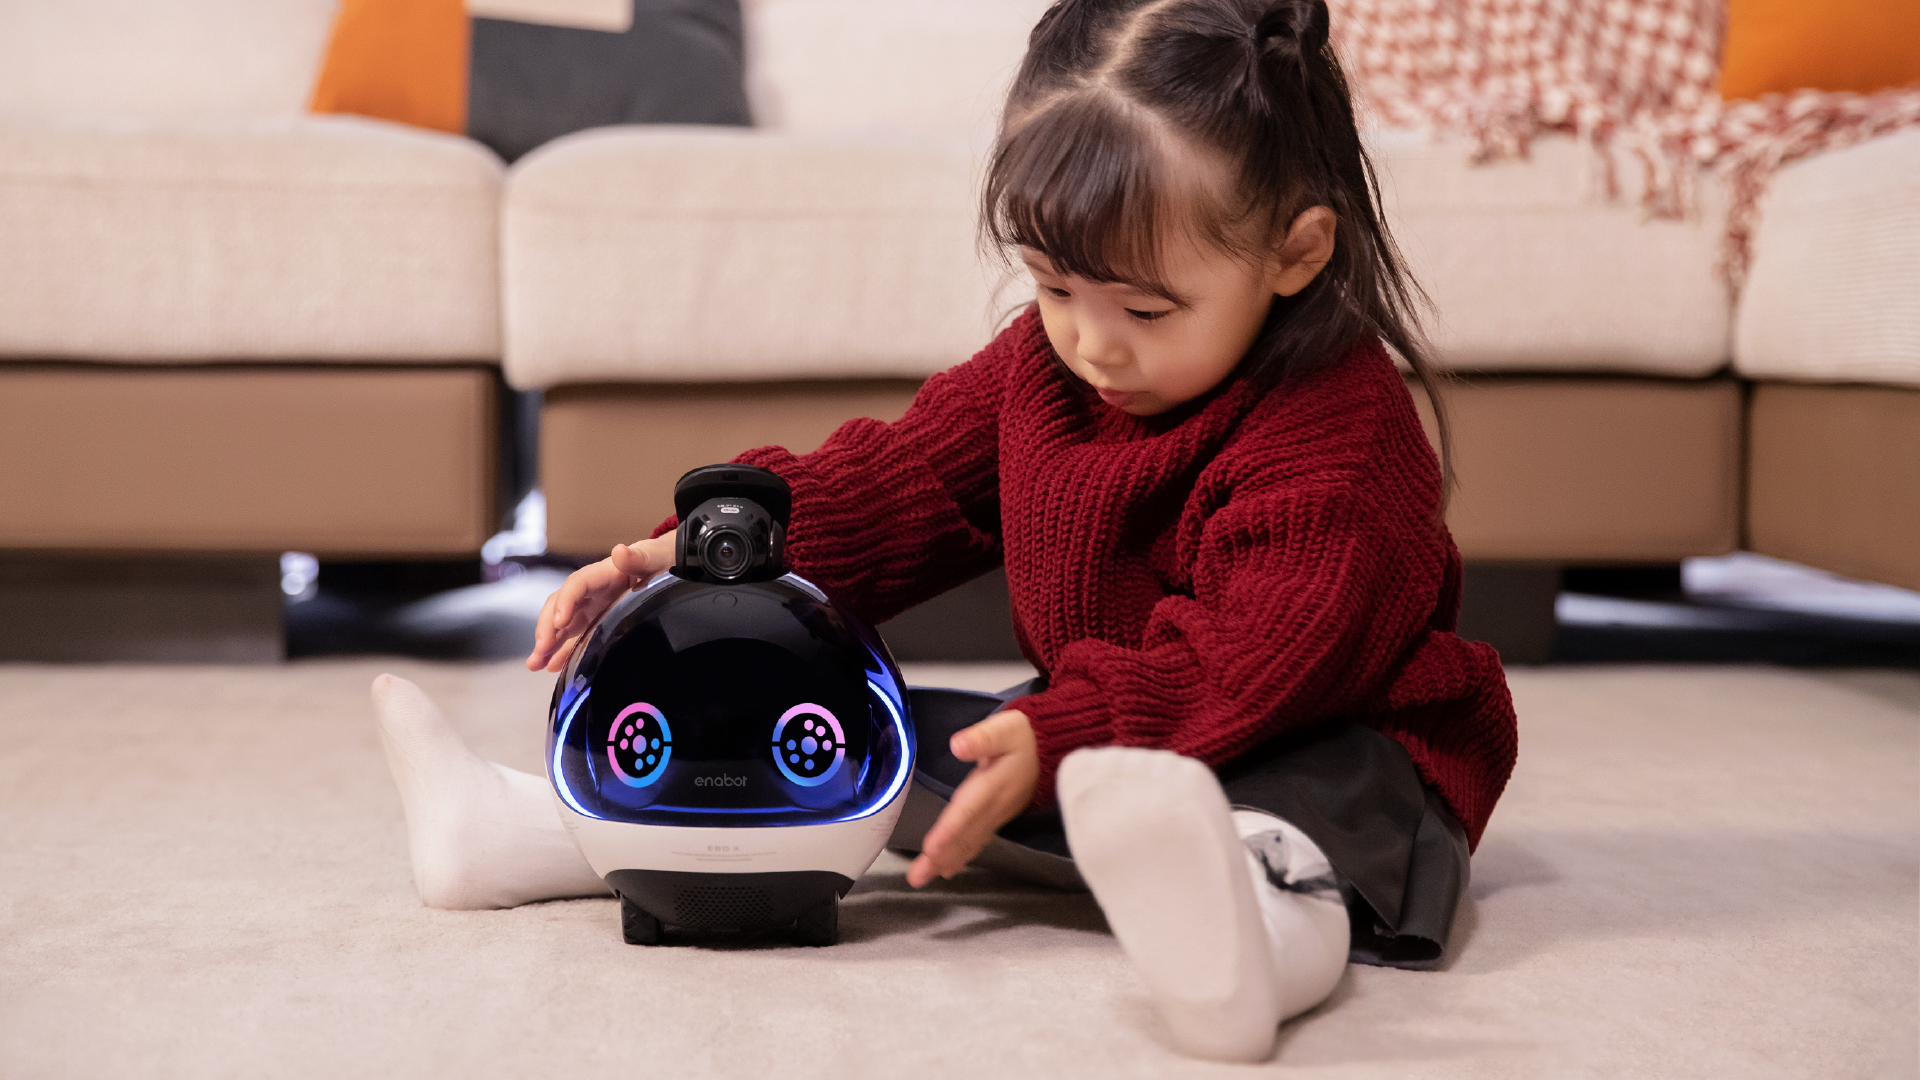 Enabot EBO SE con juego de 2 ruedas, cámara robótica de carga automática  con video, visión nocturna, robot compañero inalámbrico para mascotas